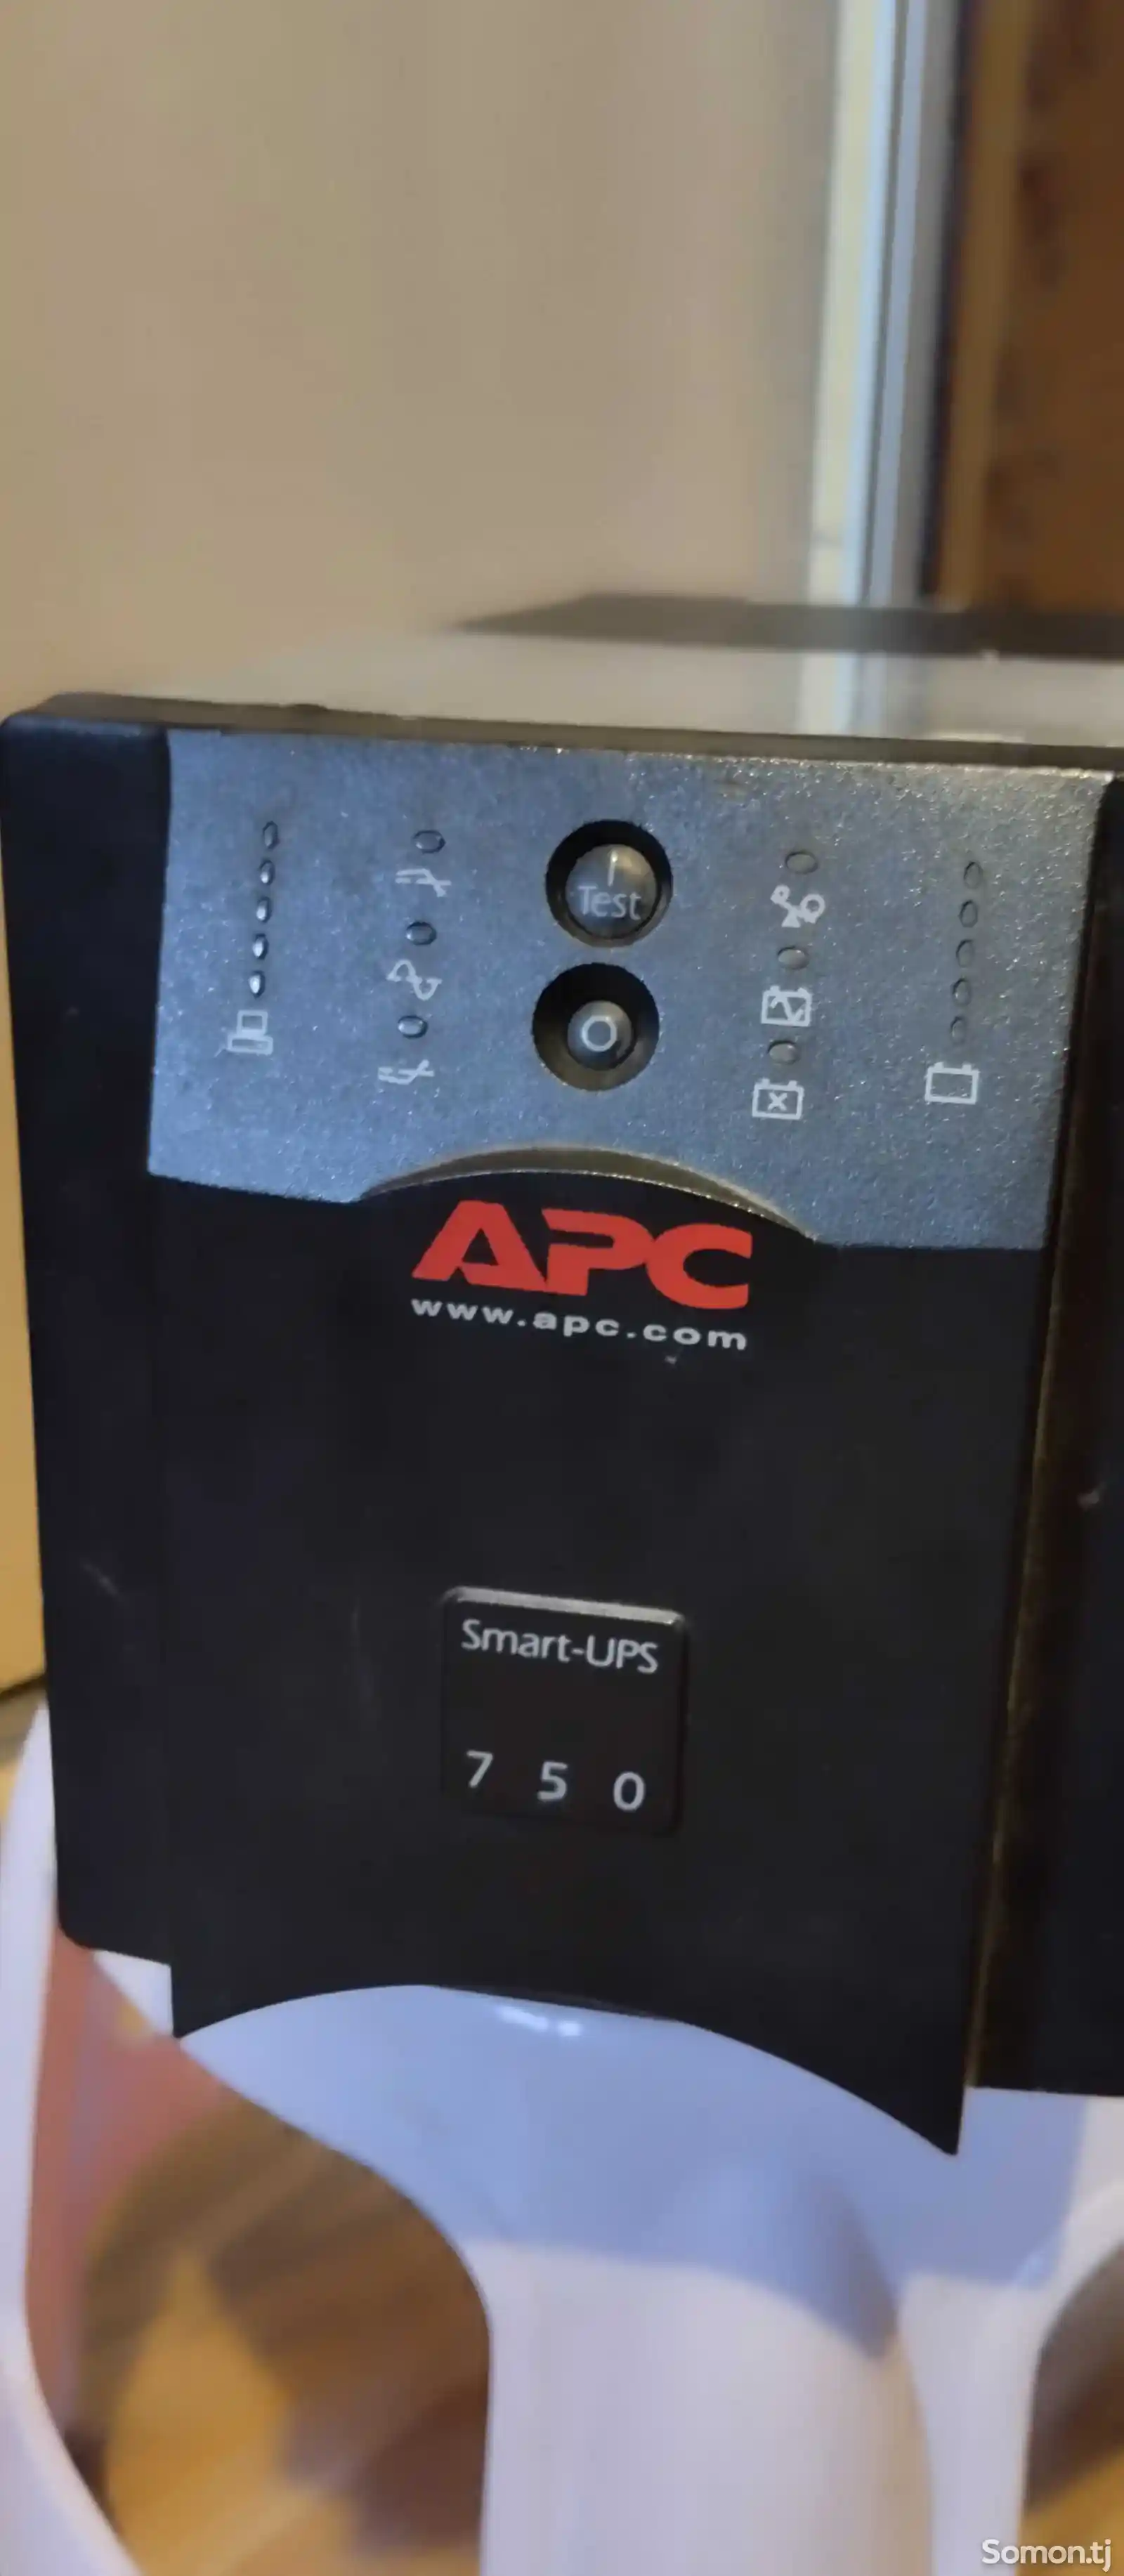 Источники беспроводного питания UPS APC SmartUPS 750-4